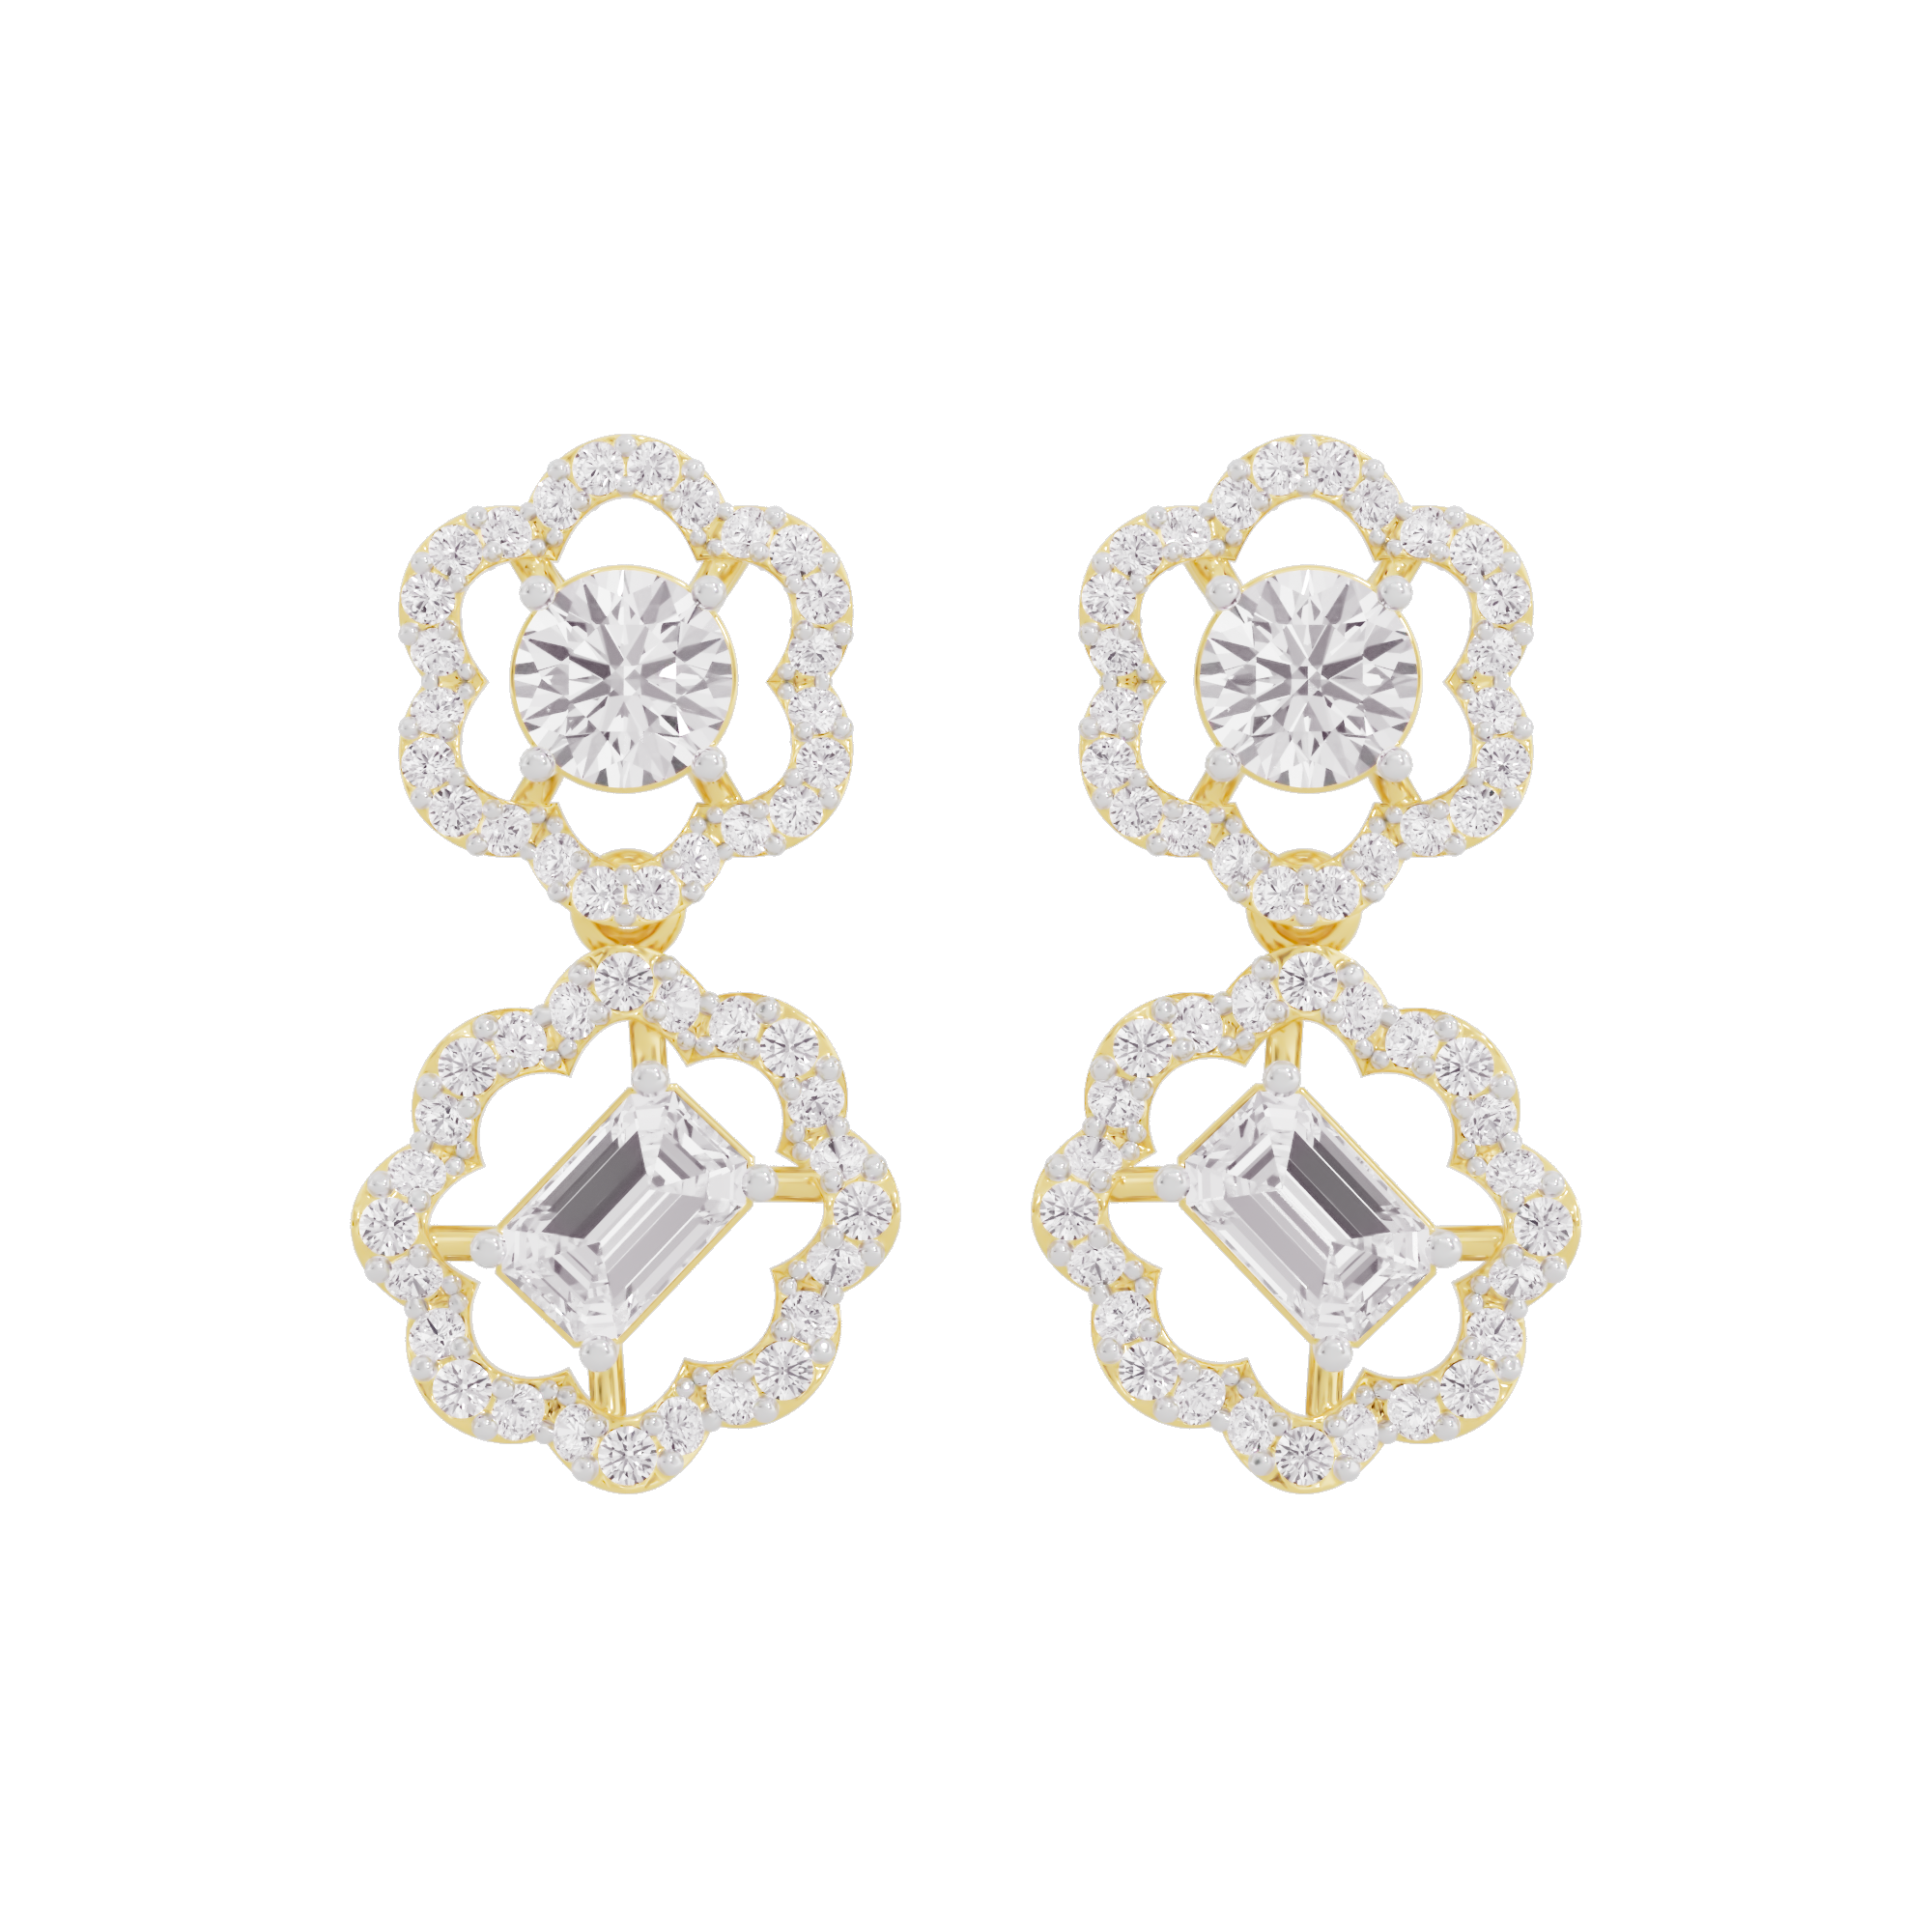 Ethereal Essence Diamond Earrings